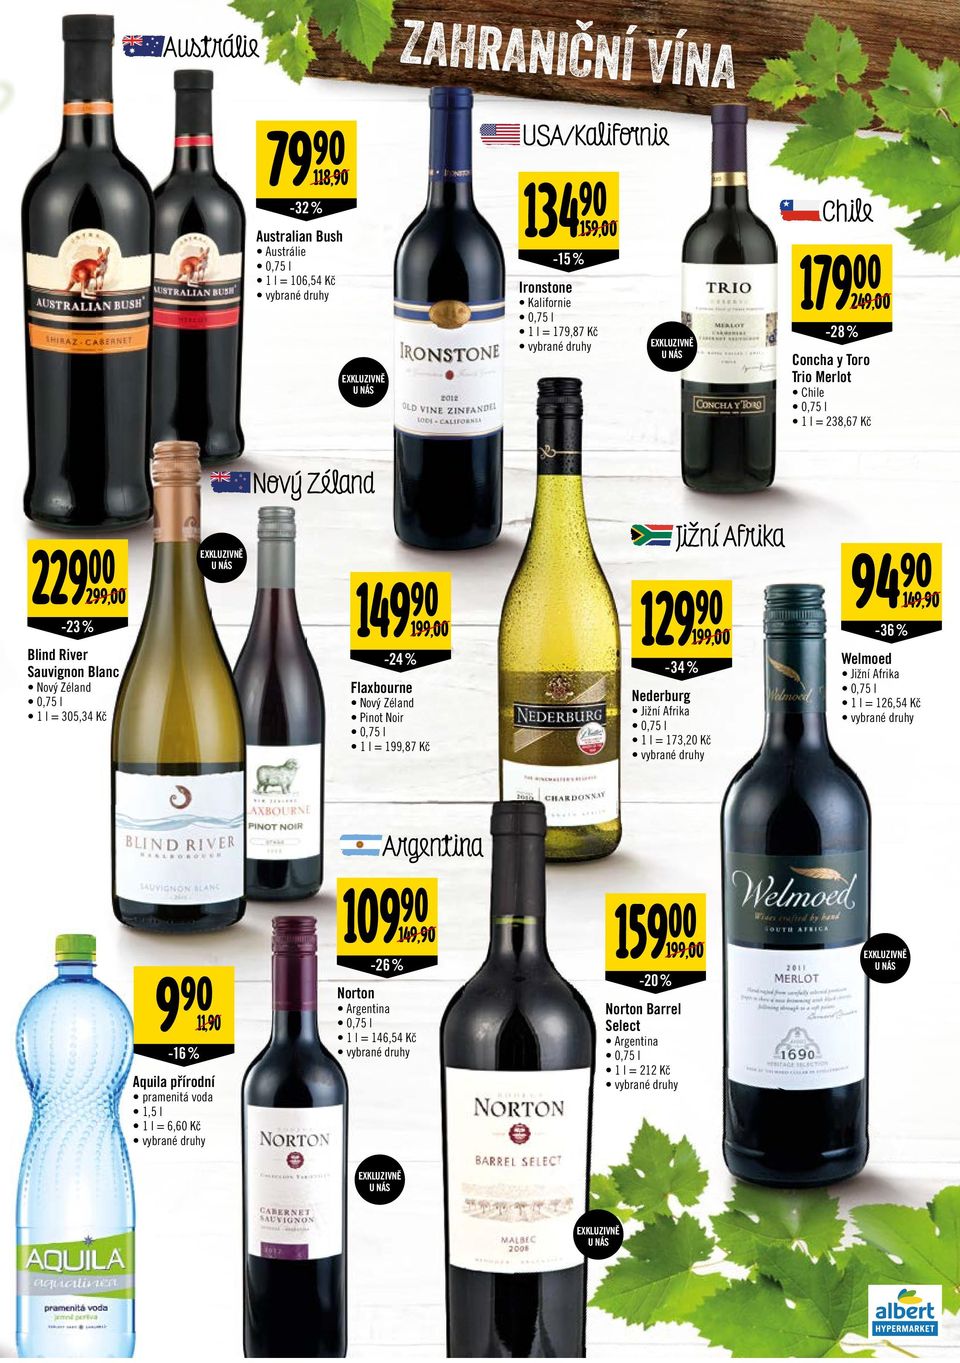 Flaxbourne Nový Zéland Pinot Noir 1 l = 199,87 Kč Nederburg Jižní Afrika 1 l = 173,20 Kč Jižní Afrika -34 % 94-36 % 149, Welmoed Jižní Afrika 1 l = 126,54 Kč